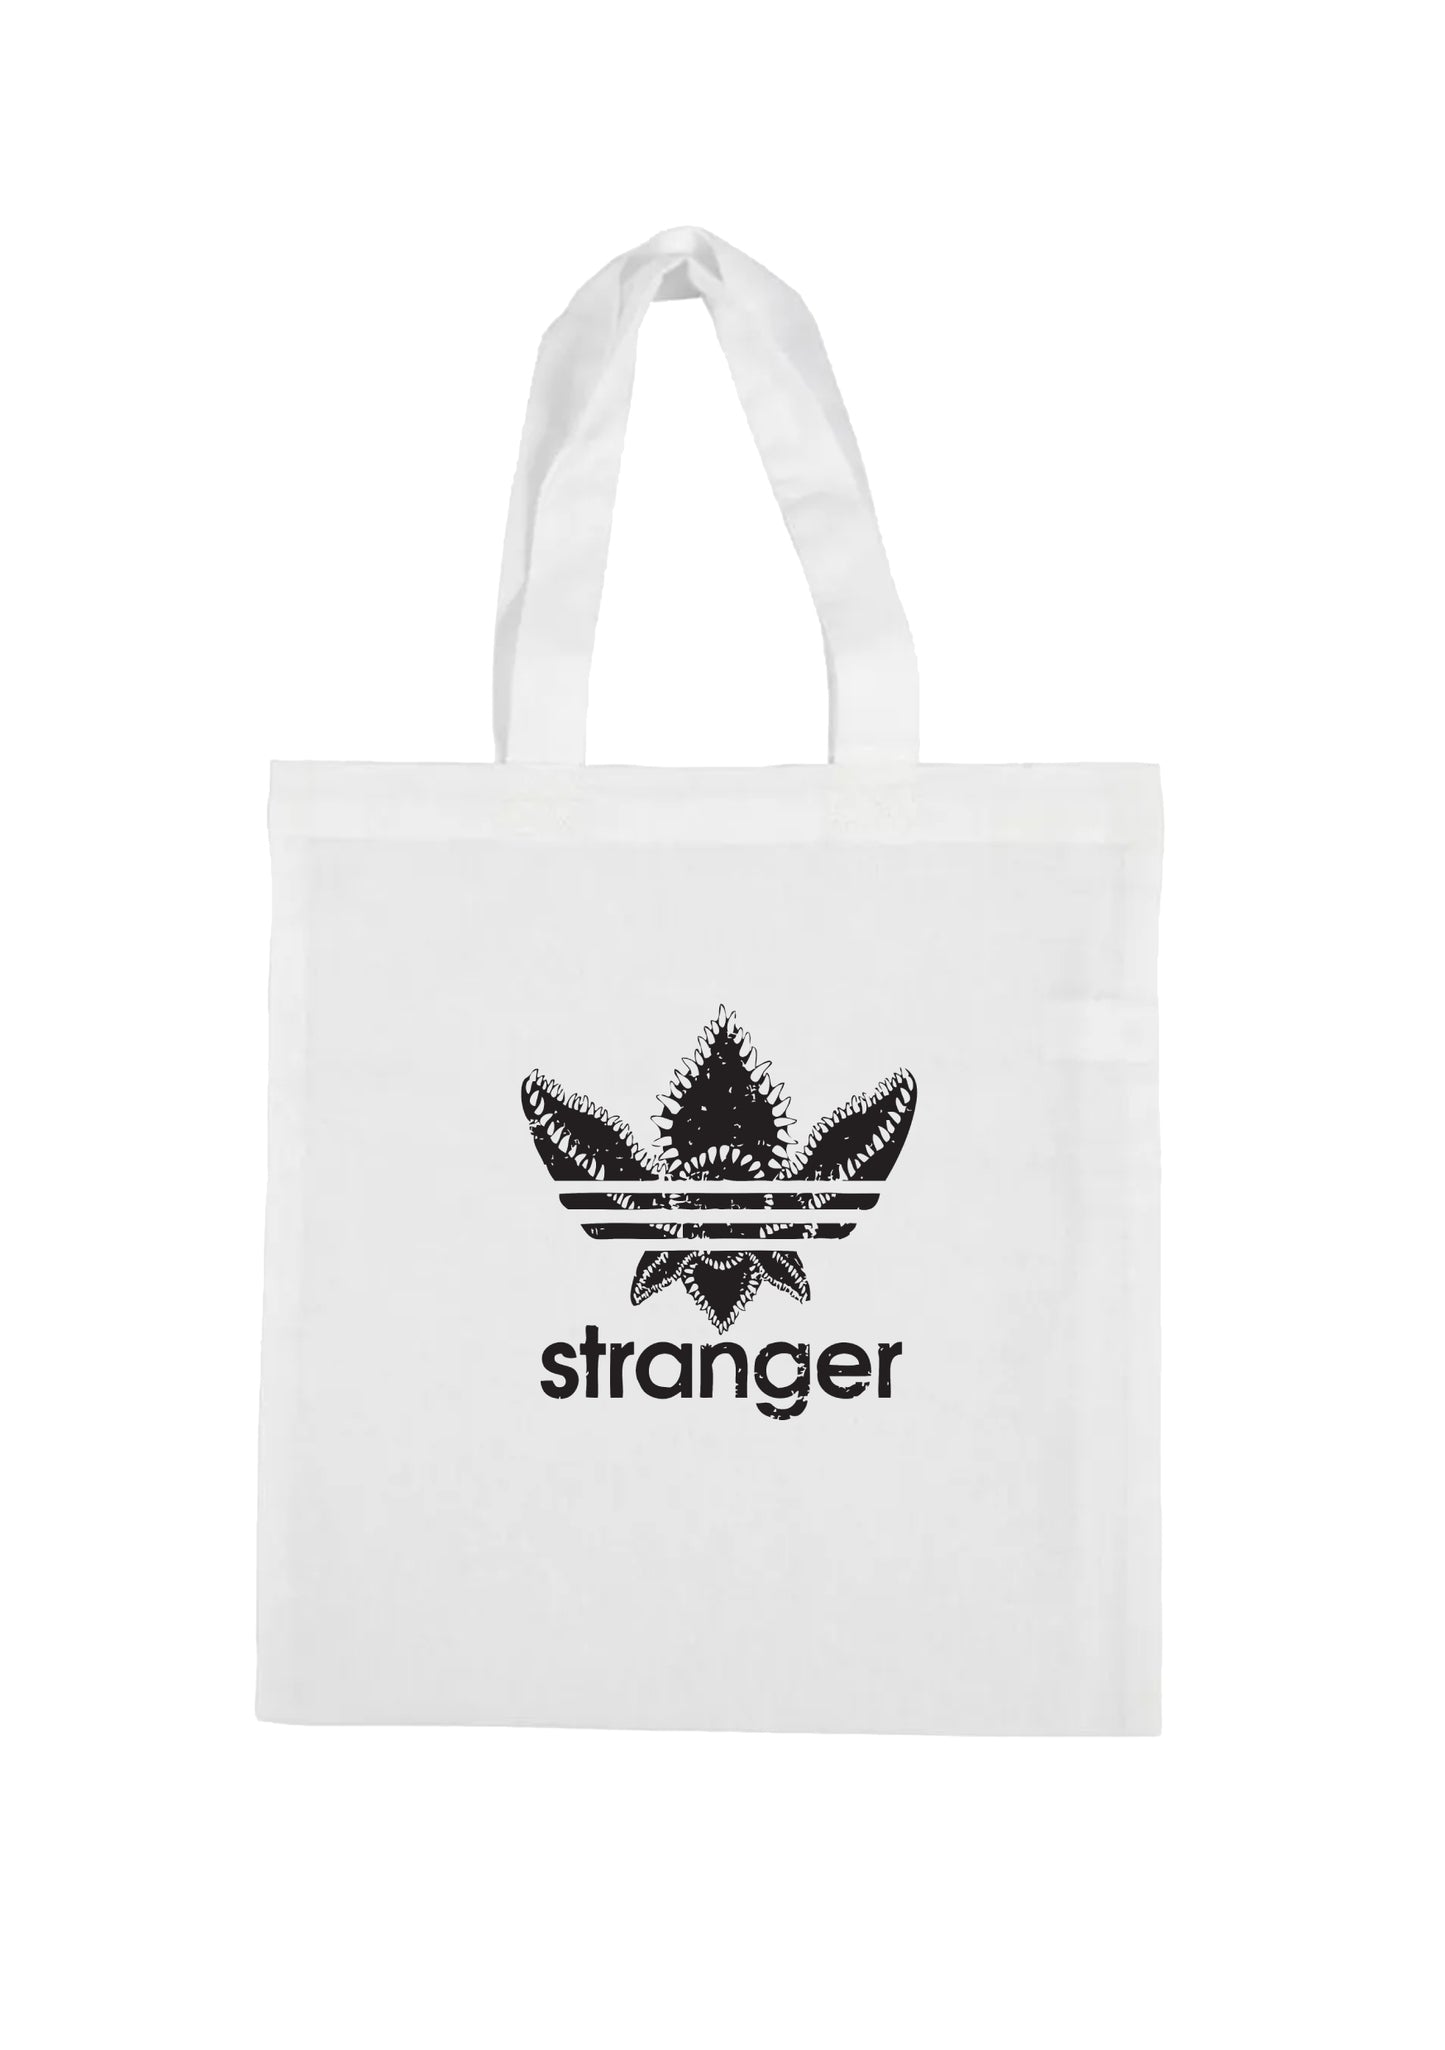 shopping bag - stranger logo